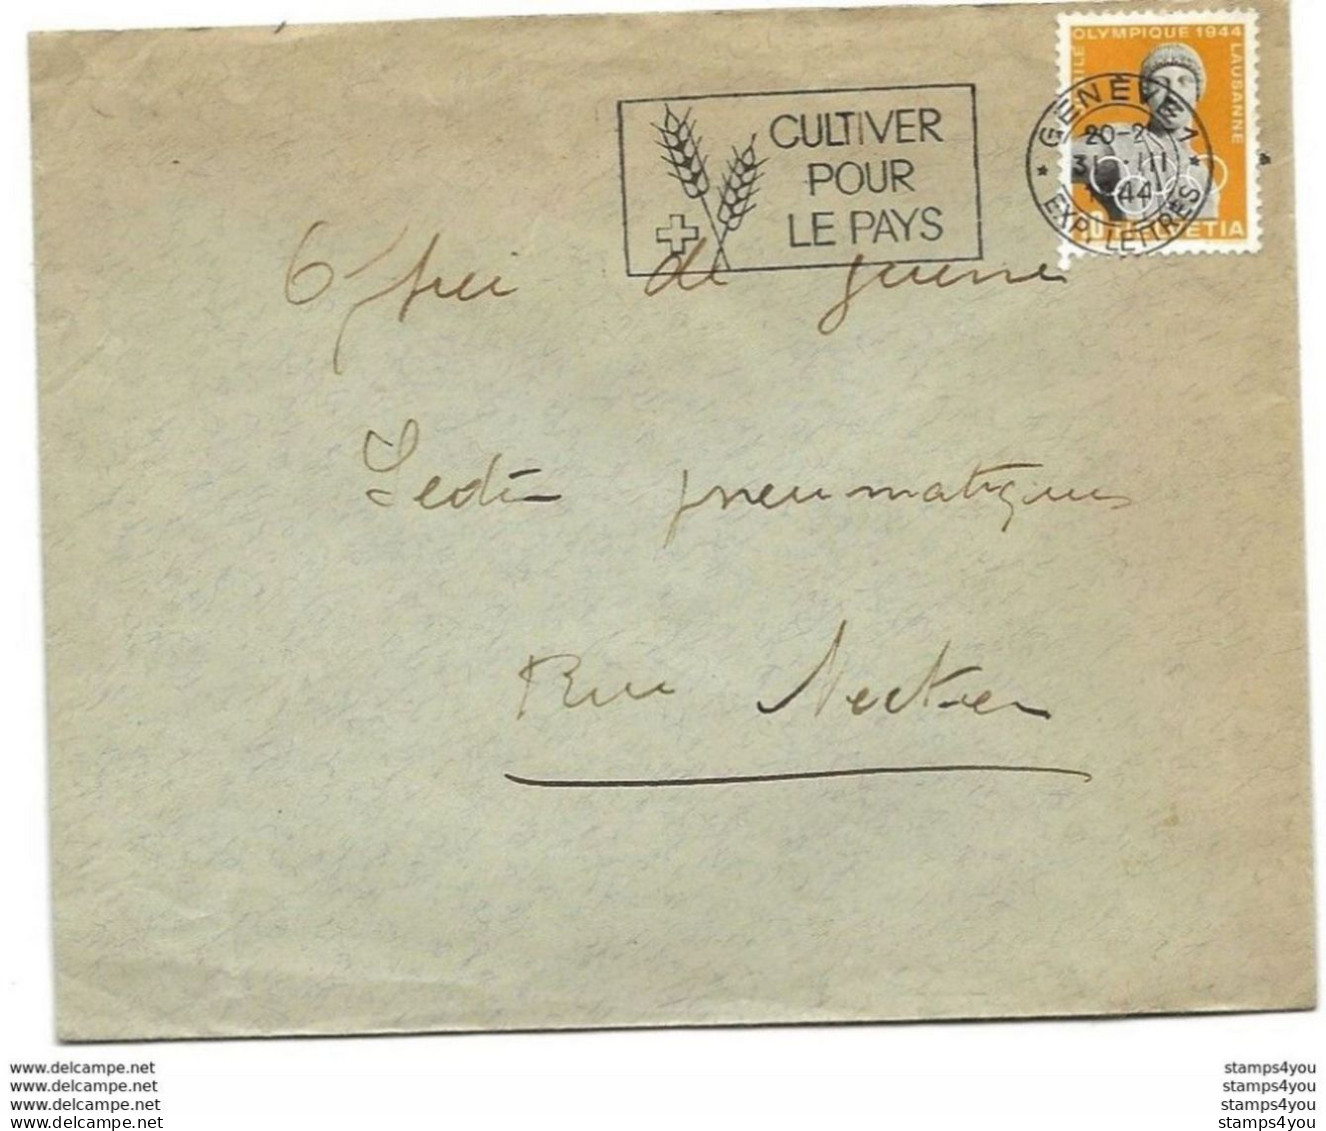 I - 96 - Enveloppe Avec Oblit Mécanique "Cultiver Pour Le Pays" 1944 - Lettres & Documents